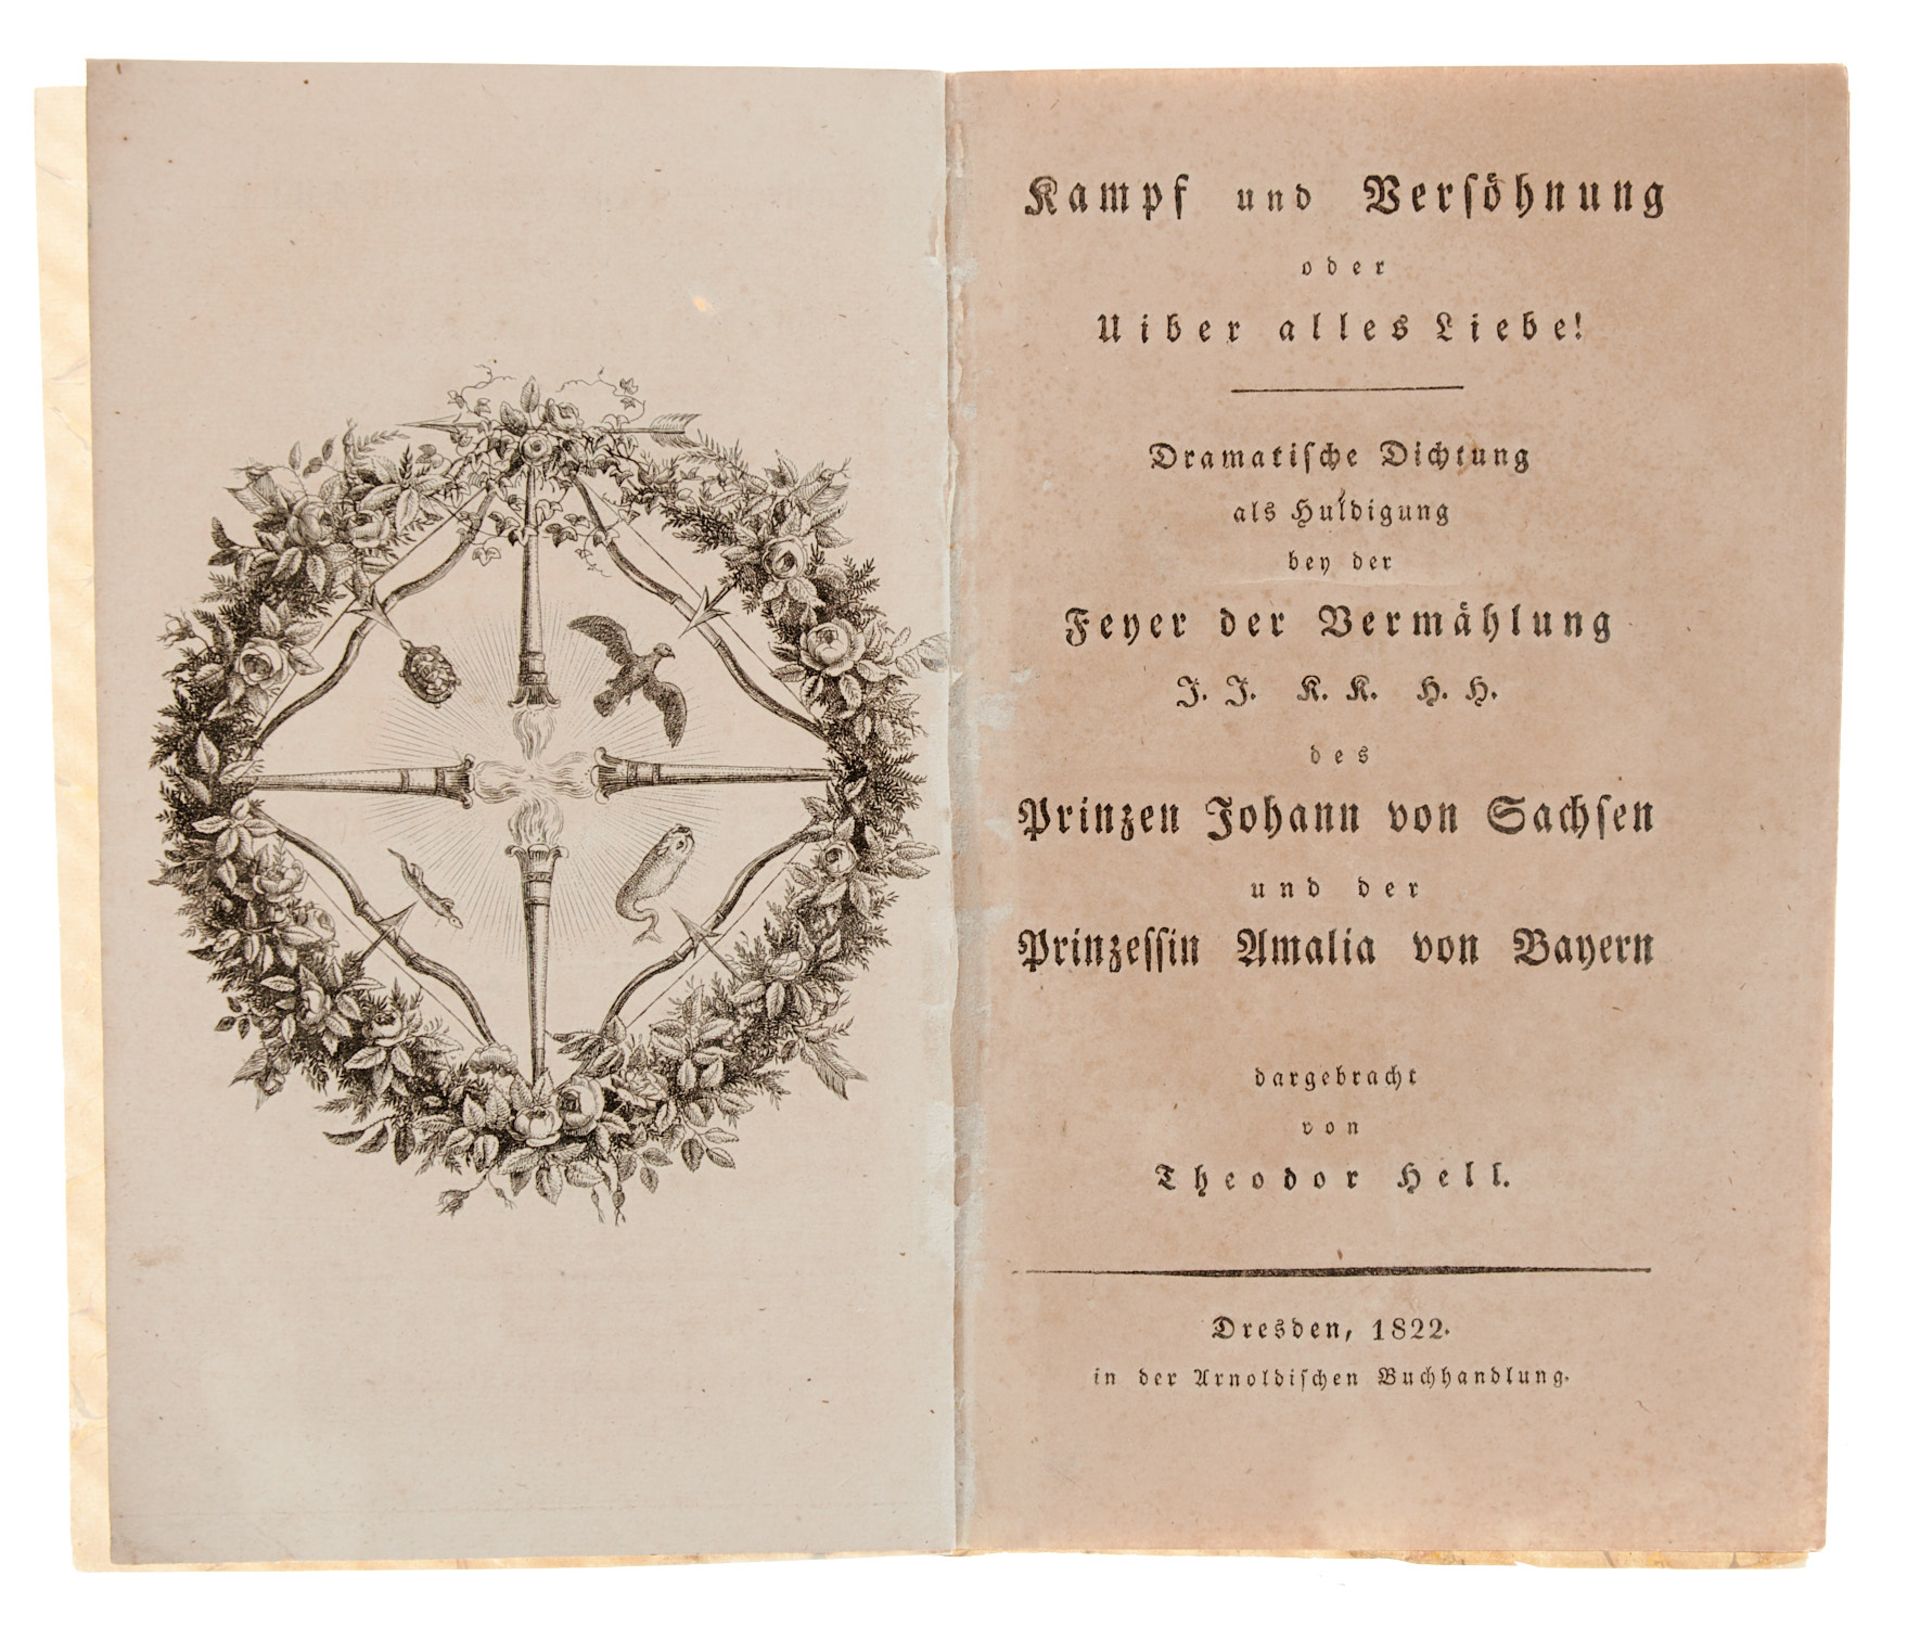 Bayern Sachsen Hell, Th. (d. i. WINKLER, C. G. TH.), Kampf und Versöhnung oder uiber alles Liebe! - Bild 2 aus 2